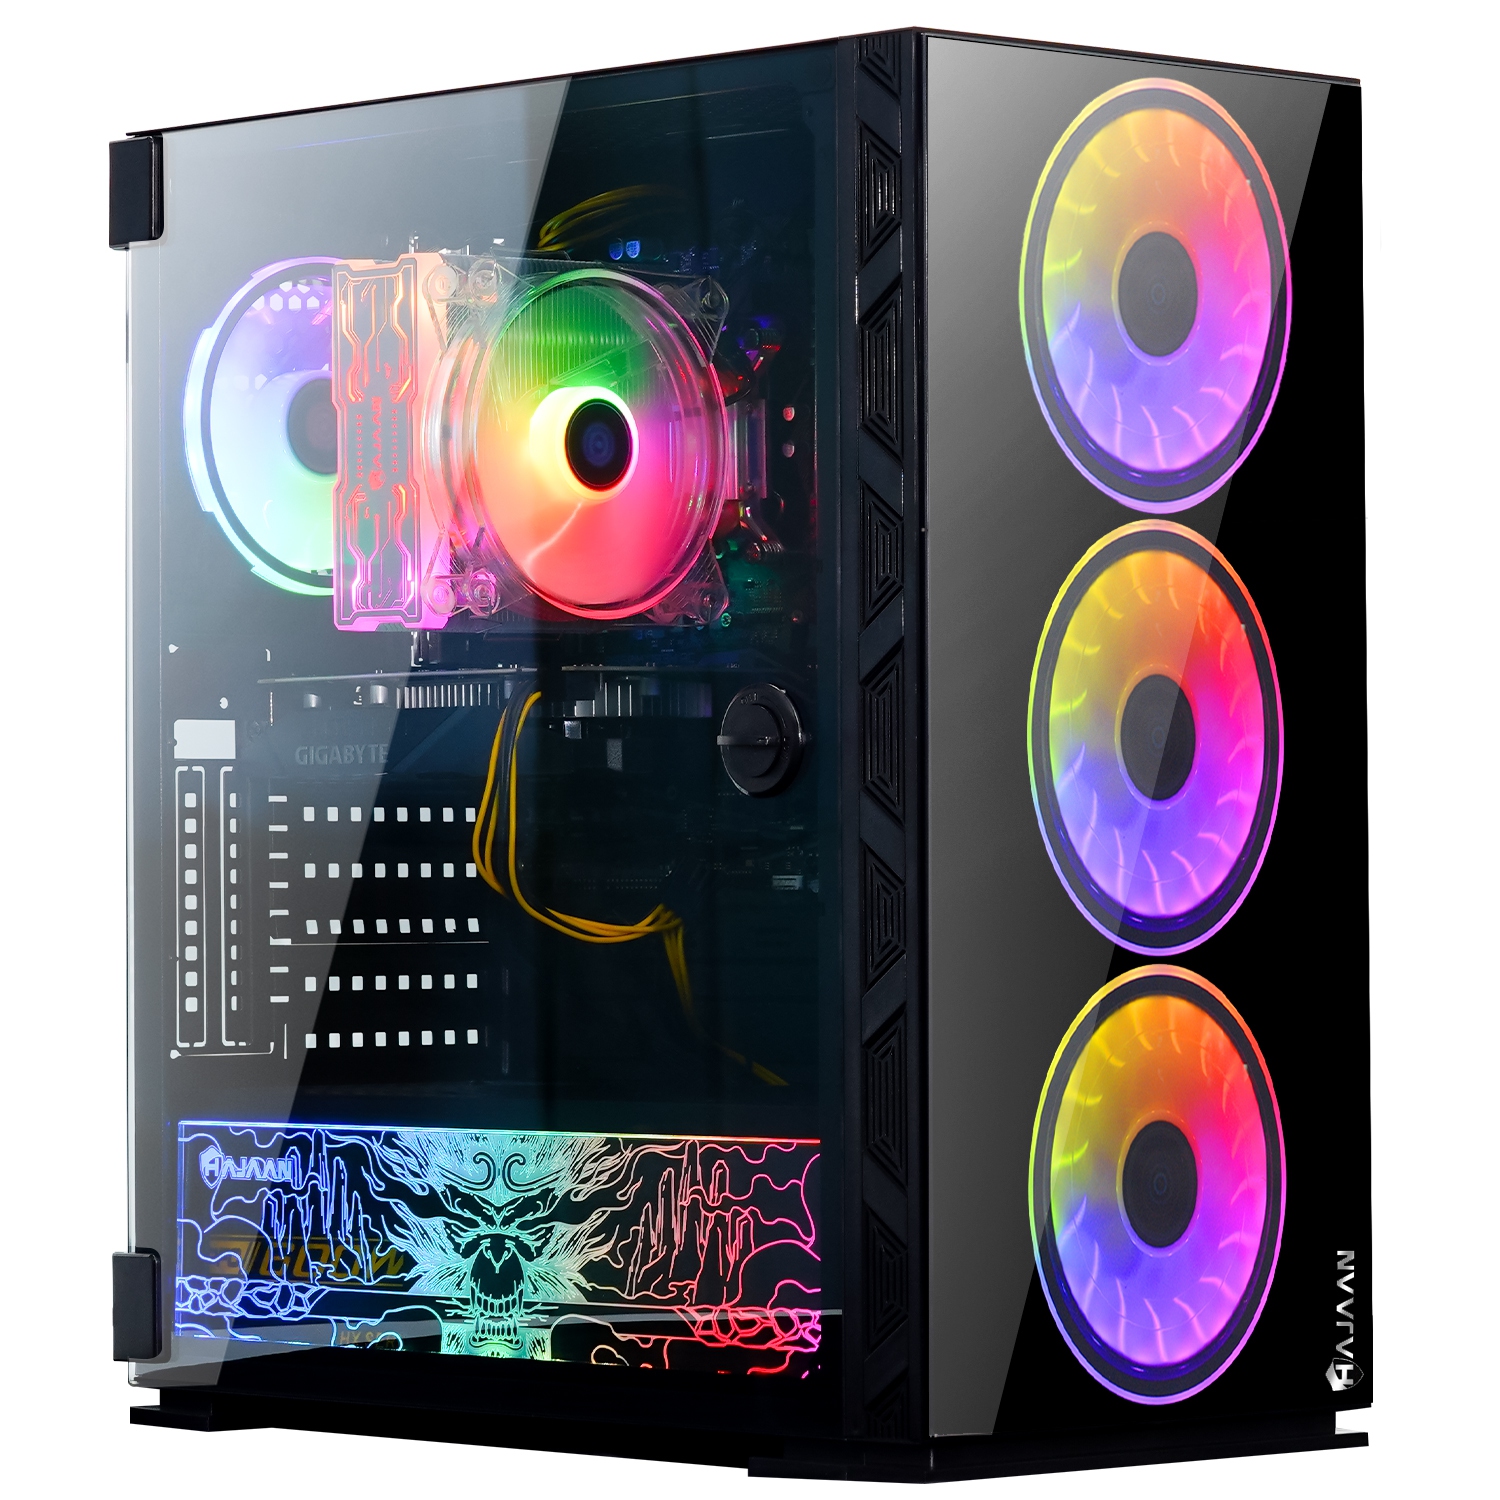 HAJAAN BREEZE PRO Gaming Desktop PC | RTX 3060 12GB GDDR6 | AMD Ryzen 7 5700X 8-Core Processor | 16GB DDR4 RAM | 512GB SSD | Windows 11 Pro | Black